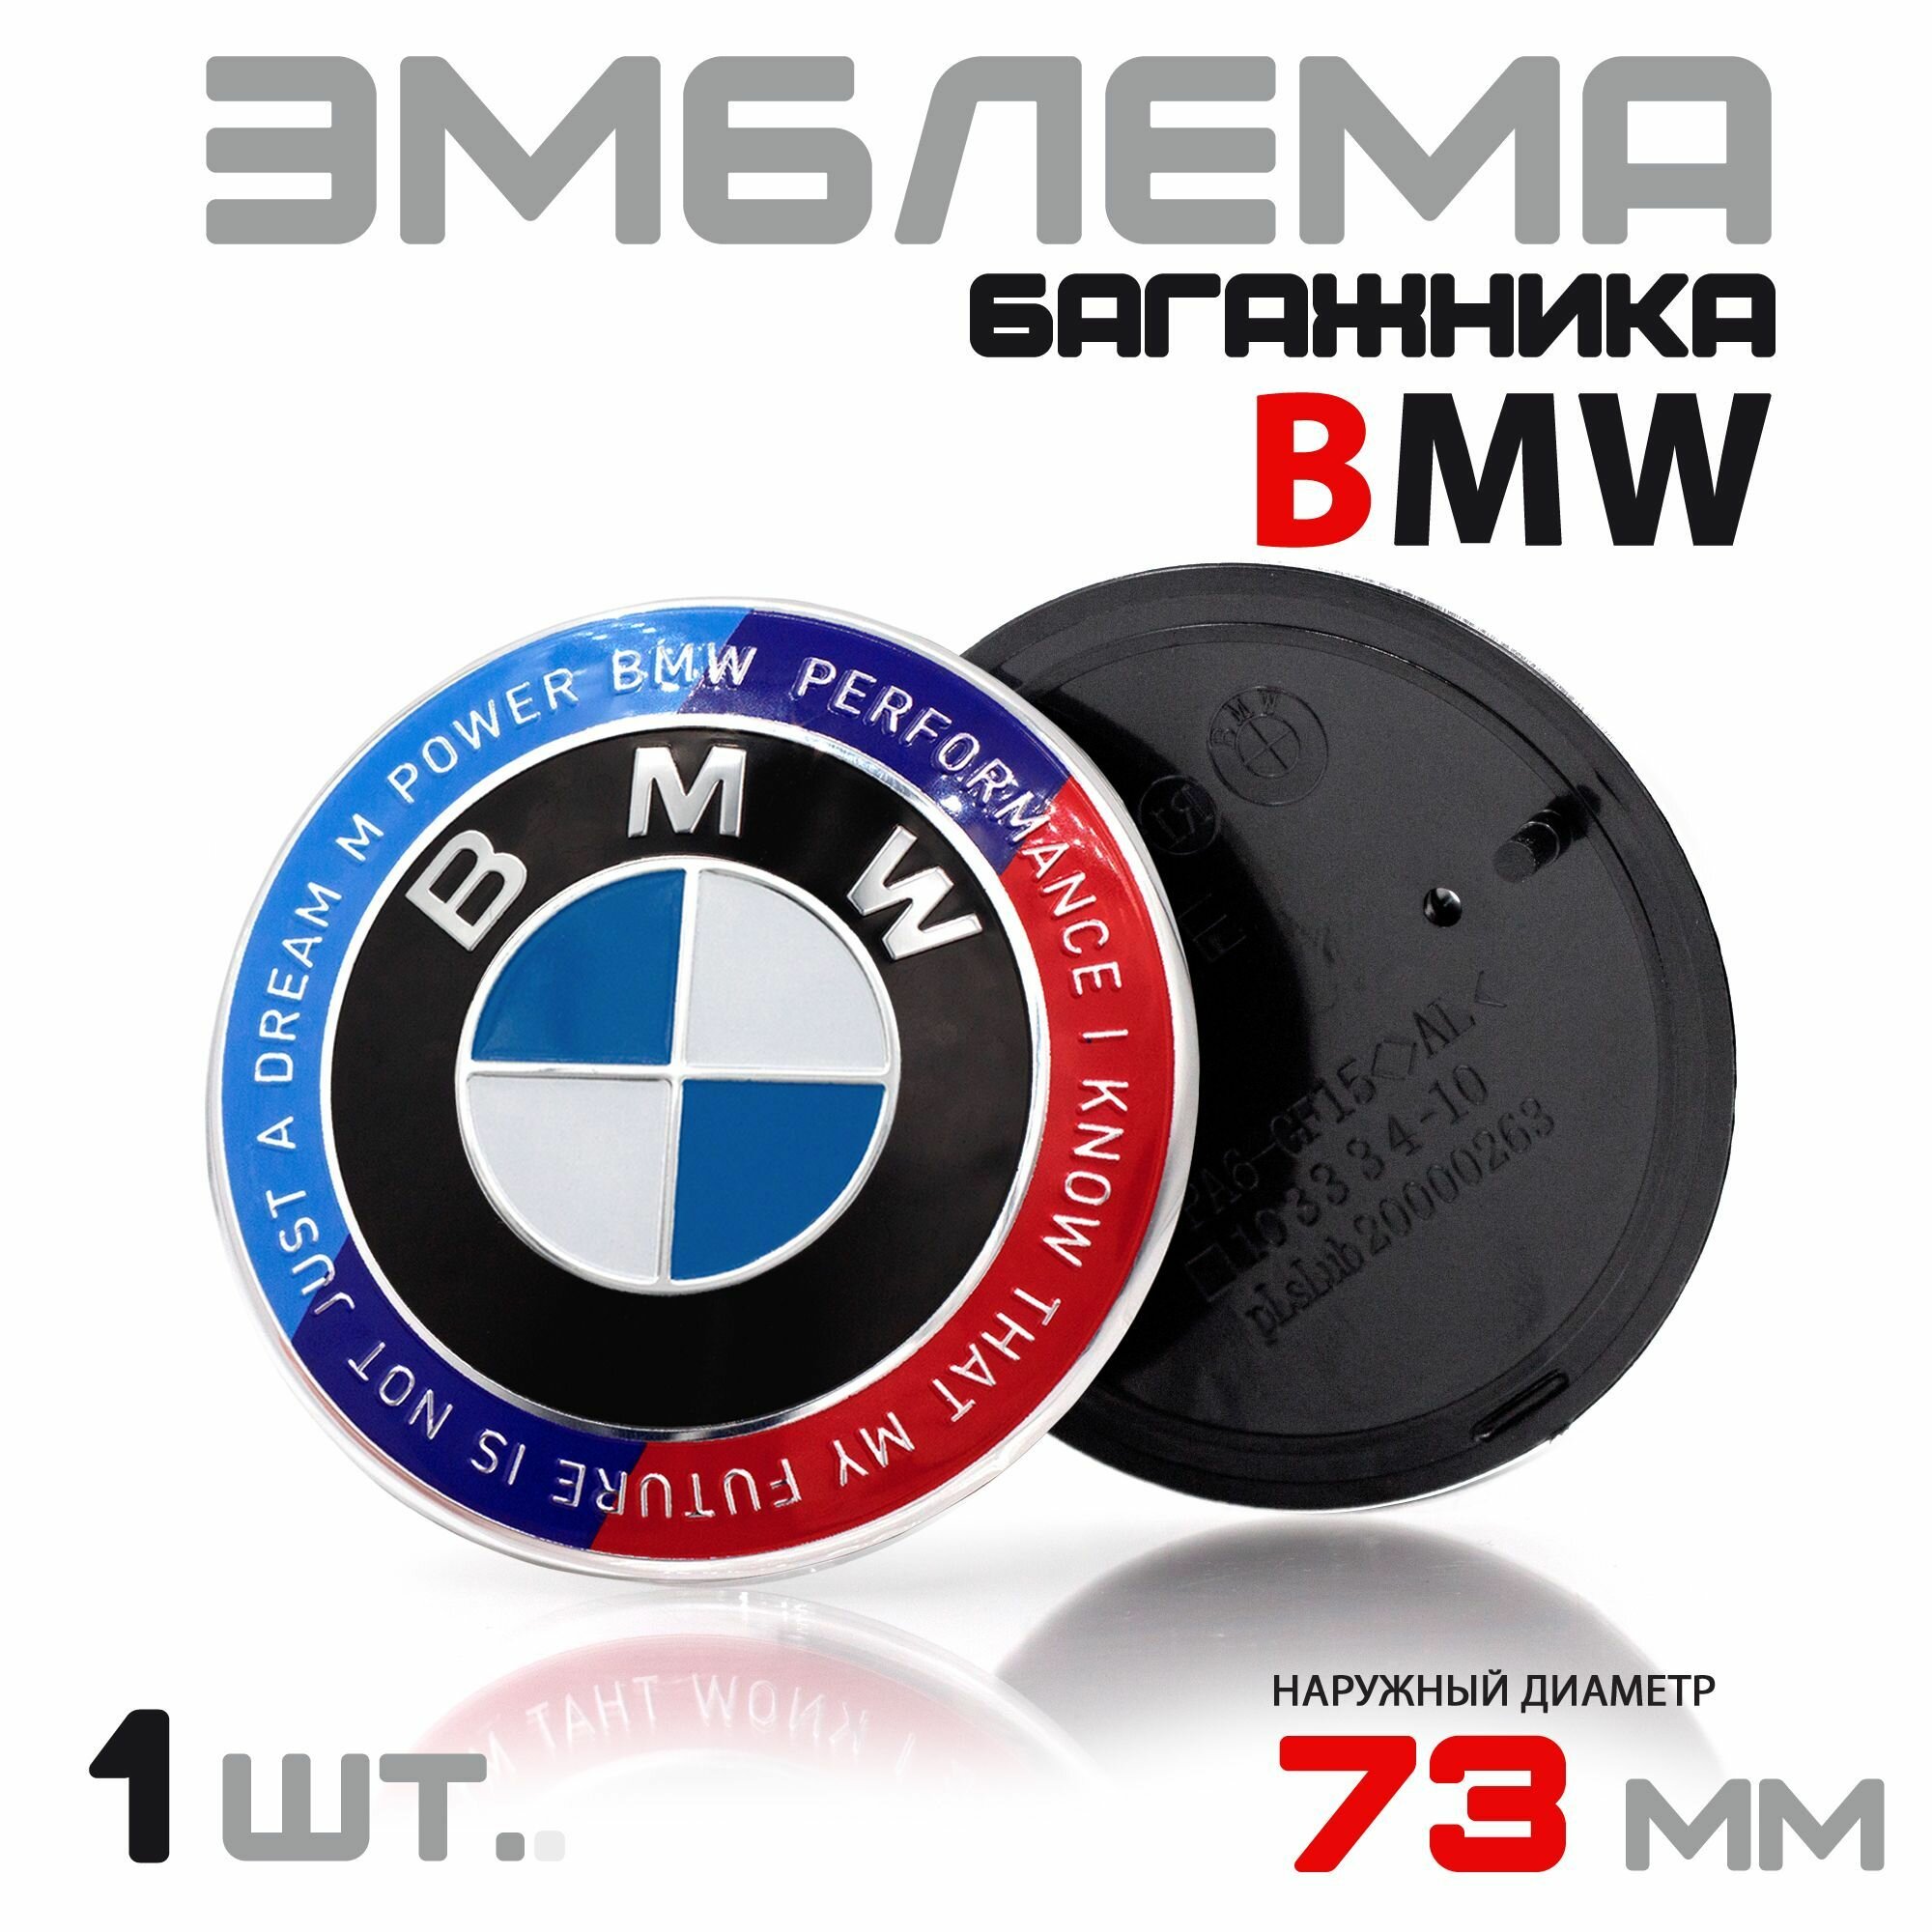 Эмблема багажника для BMW диаметр 73мм / Значок Шильдик для БМВ черная